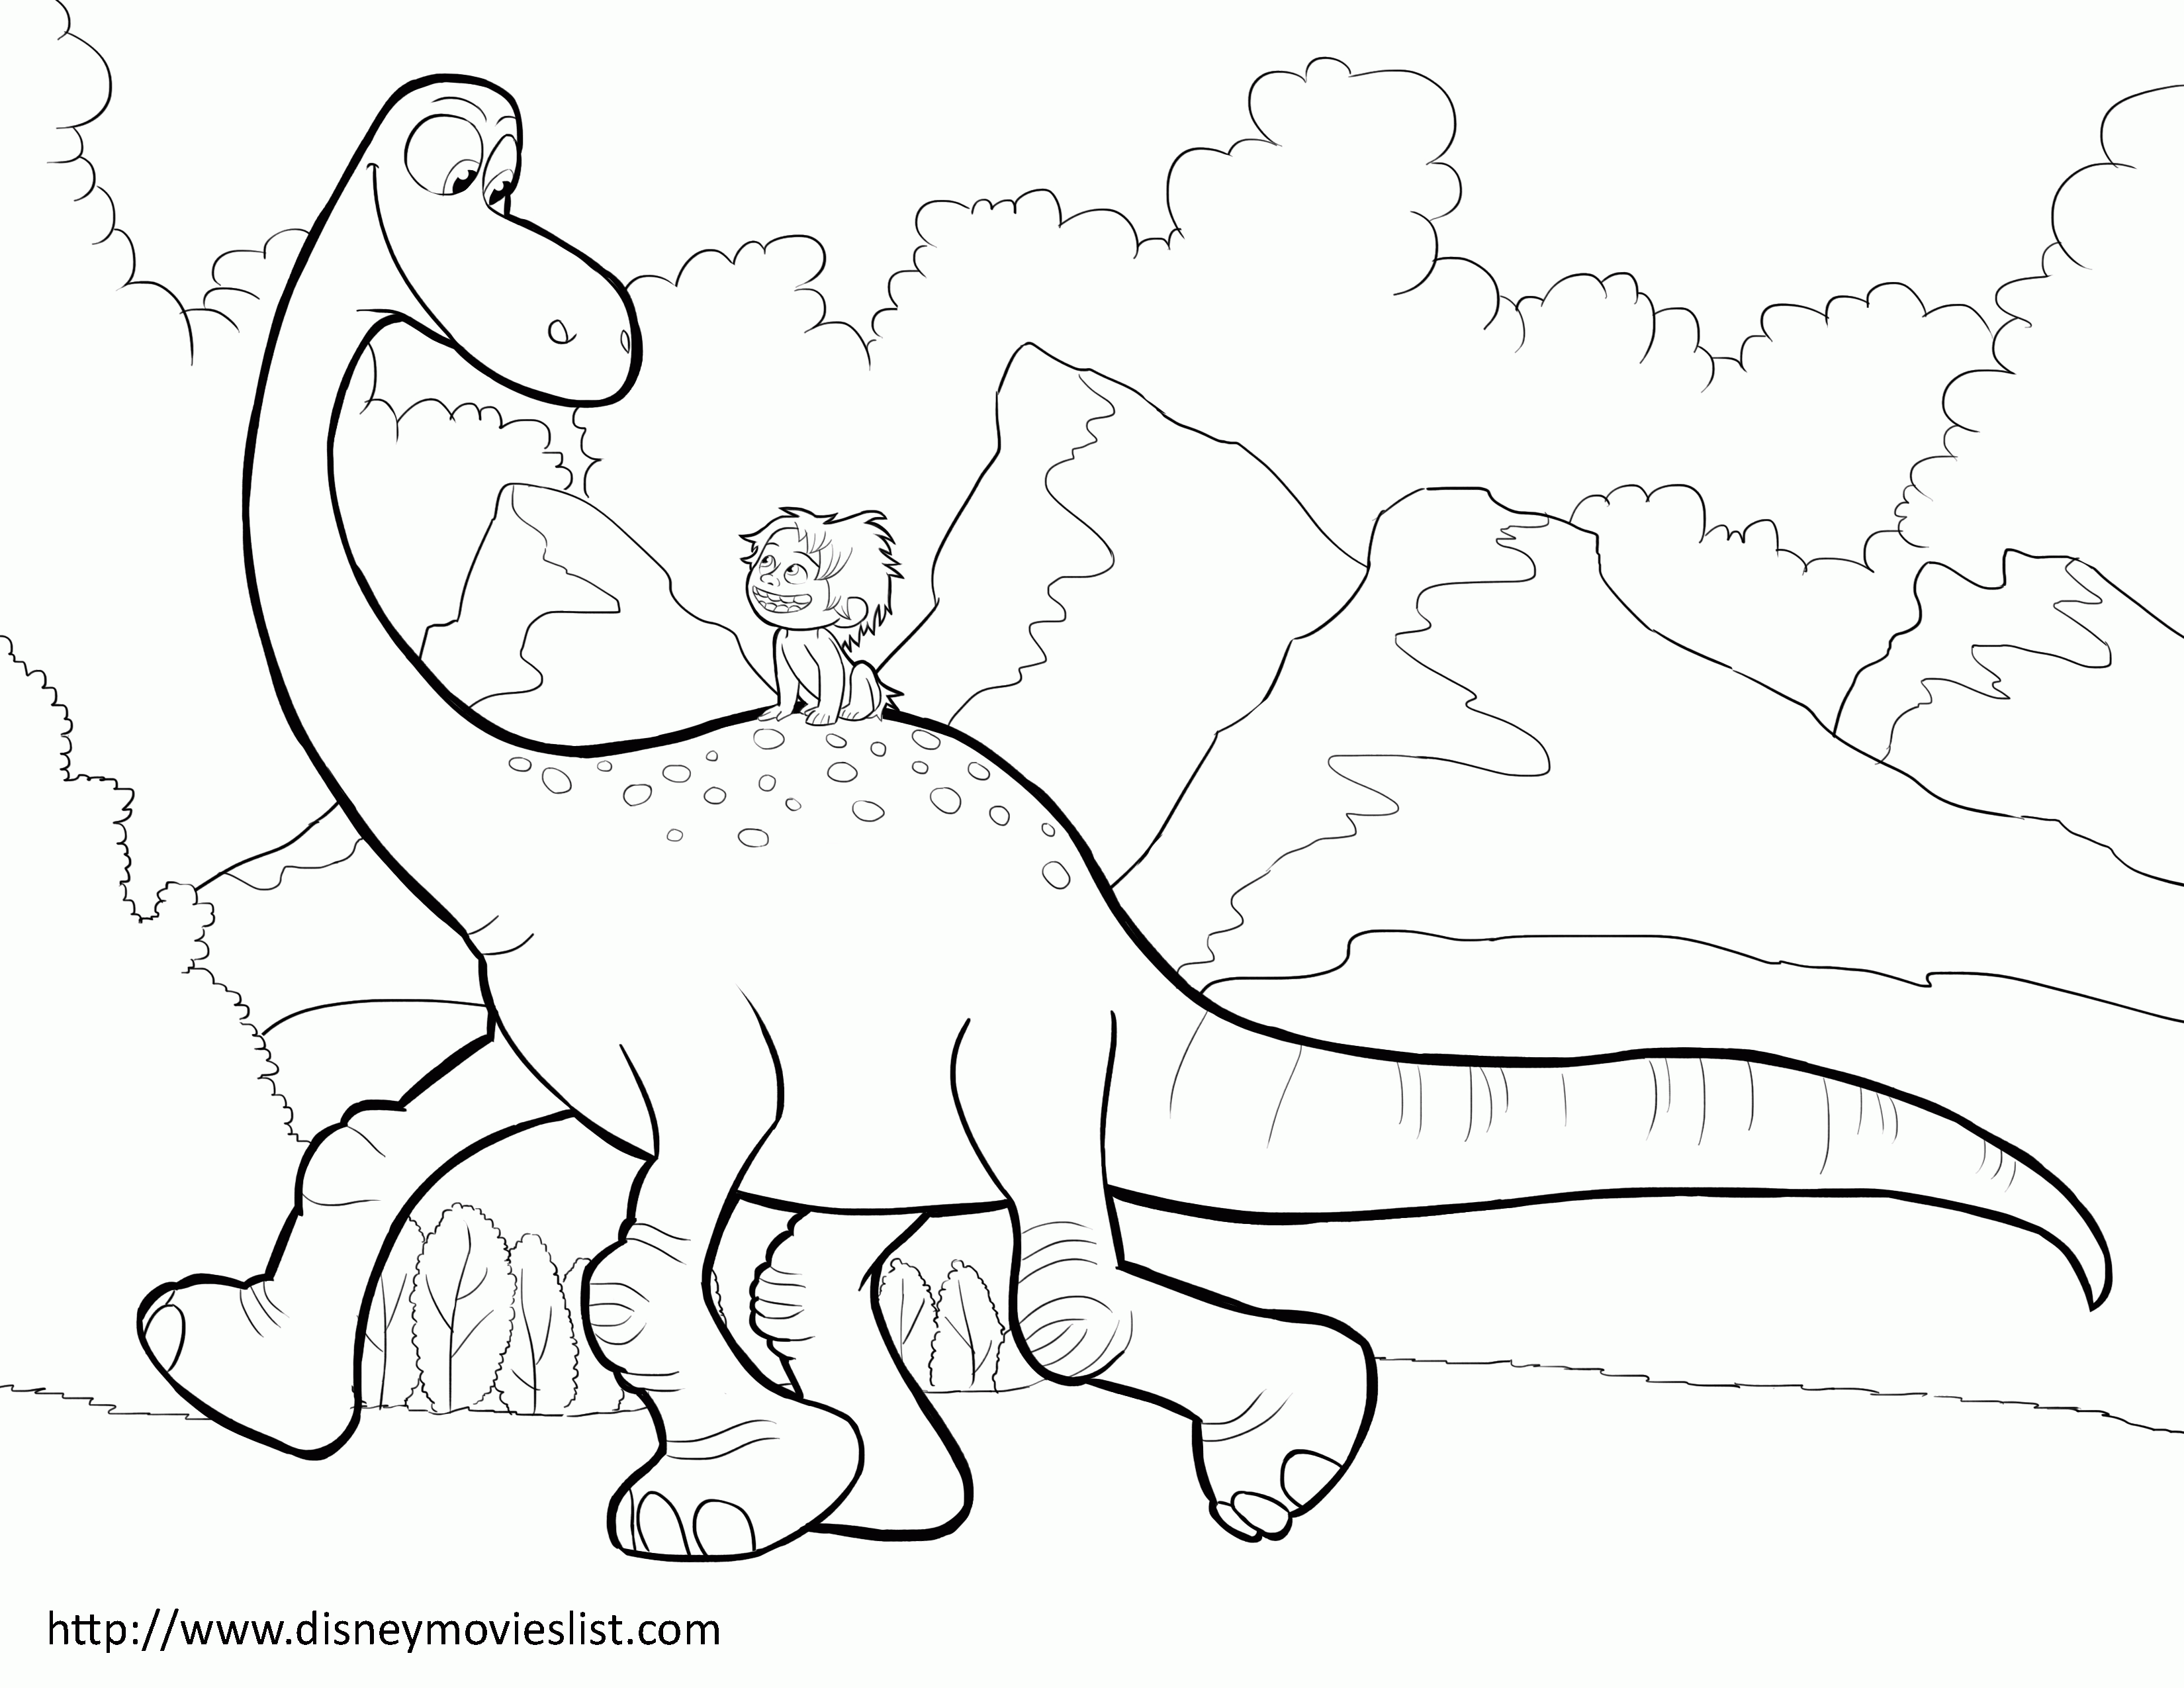 Динозавры для раскрашивания